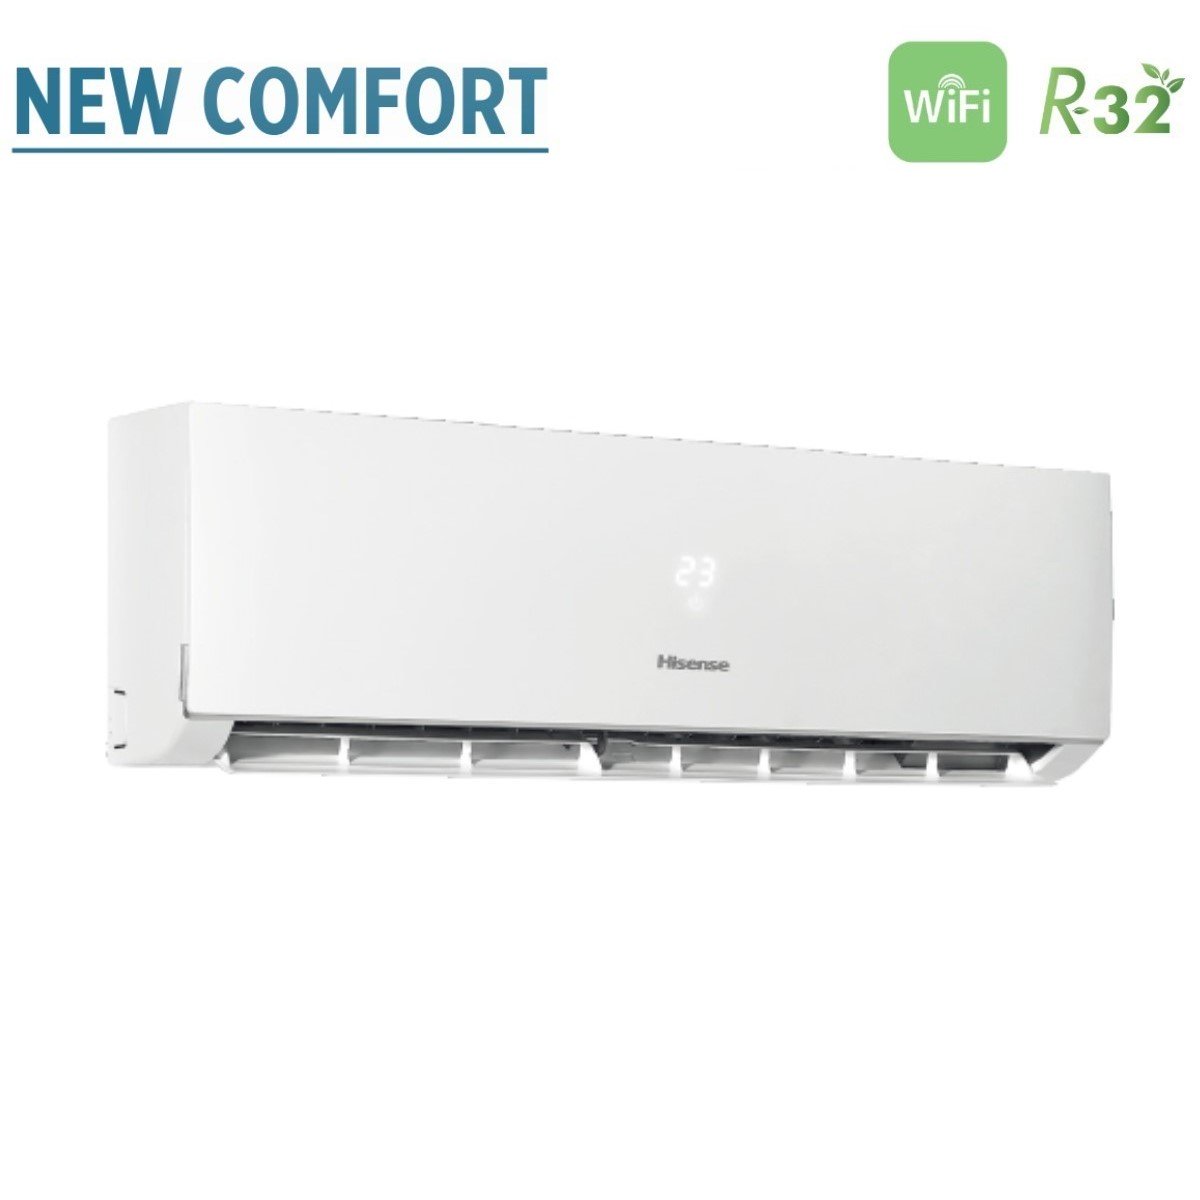 immagine-4-hisense-climatizzatore-condizionatore-hisense-dual-split-inverter-serie-new-comfort-79-con-2amw35u4rra-r-32-wi-fi-optional-70009000-novita-ean-8059657013378